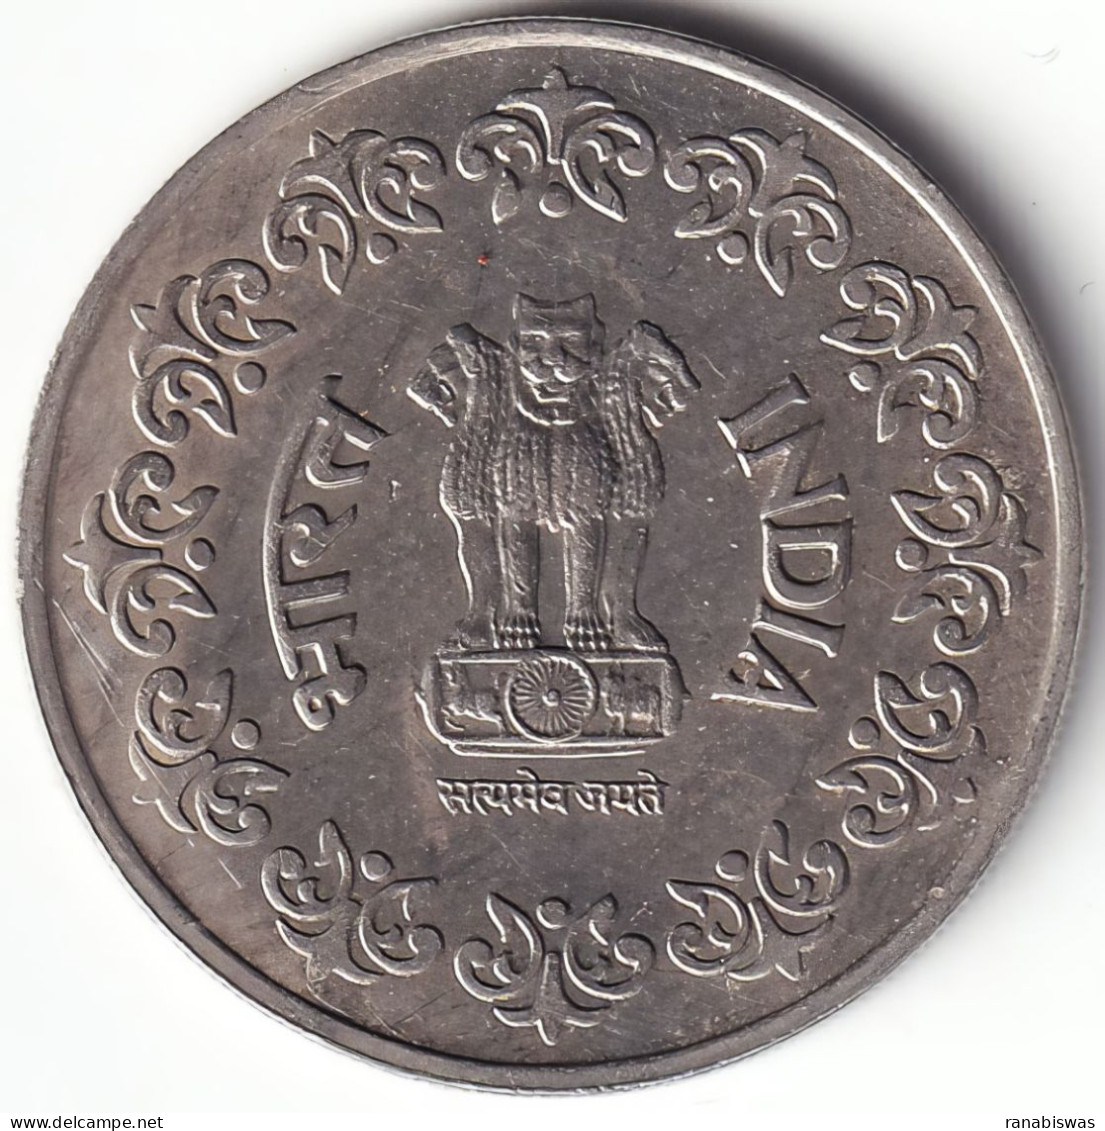 INDIA COIN LOT 105, 50 PAISE 1985, KOREA MINT, AUNC - Indien